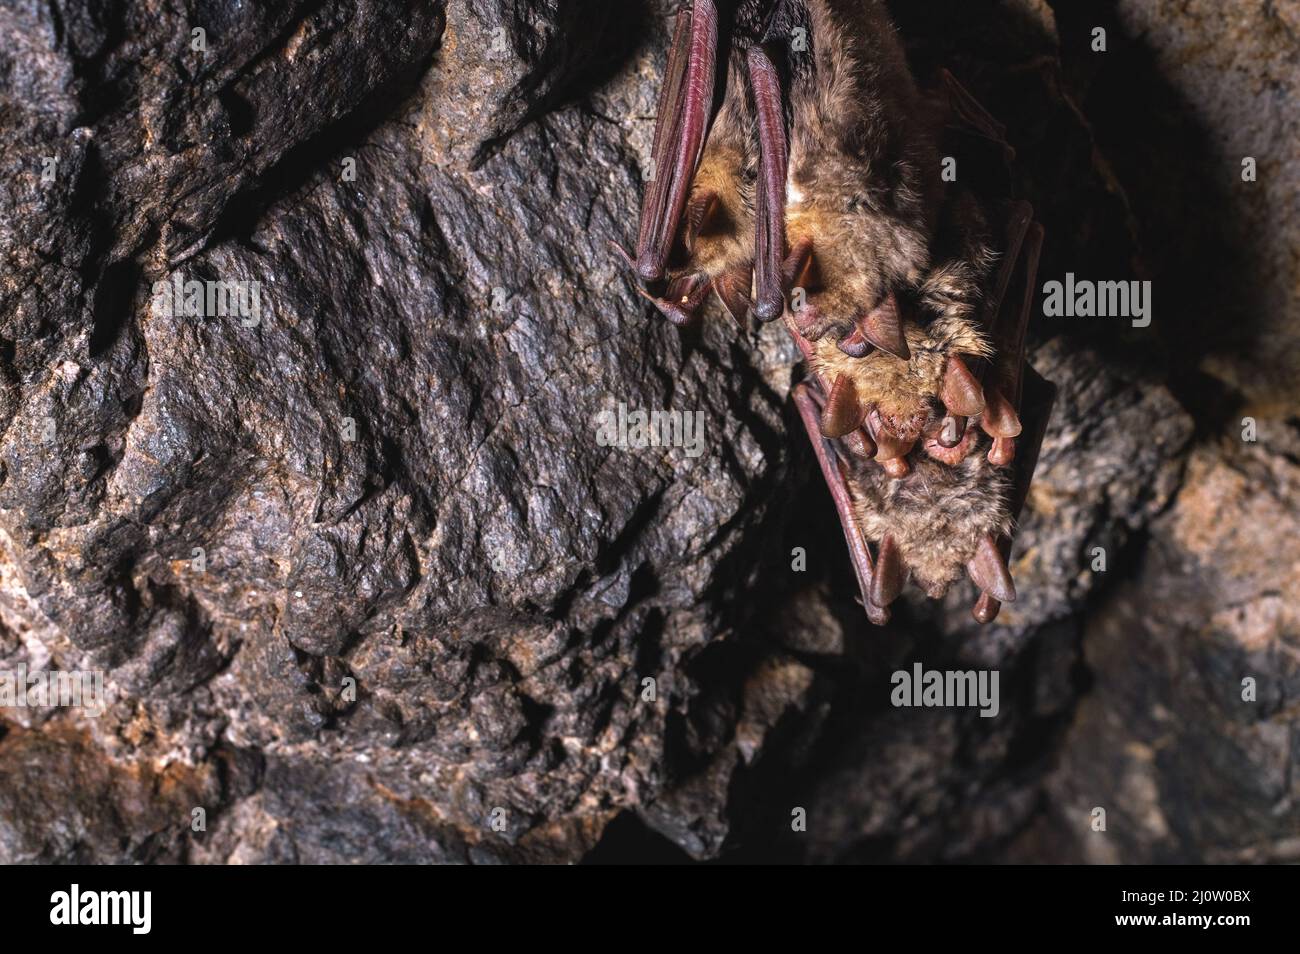 Eine Gruppe brauner Fledermäuse schläft an der Decke einer Felshöhle. Wilde kleine Fledermäuse des Nordkaukasus Stockfoto